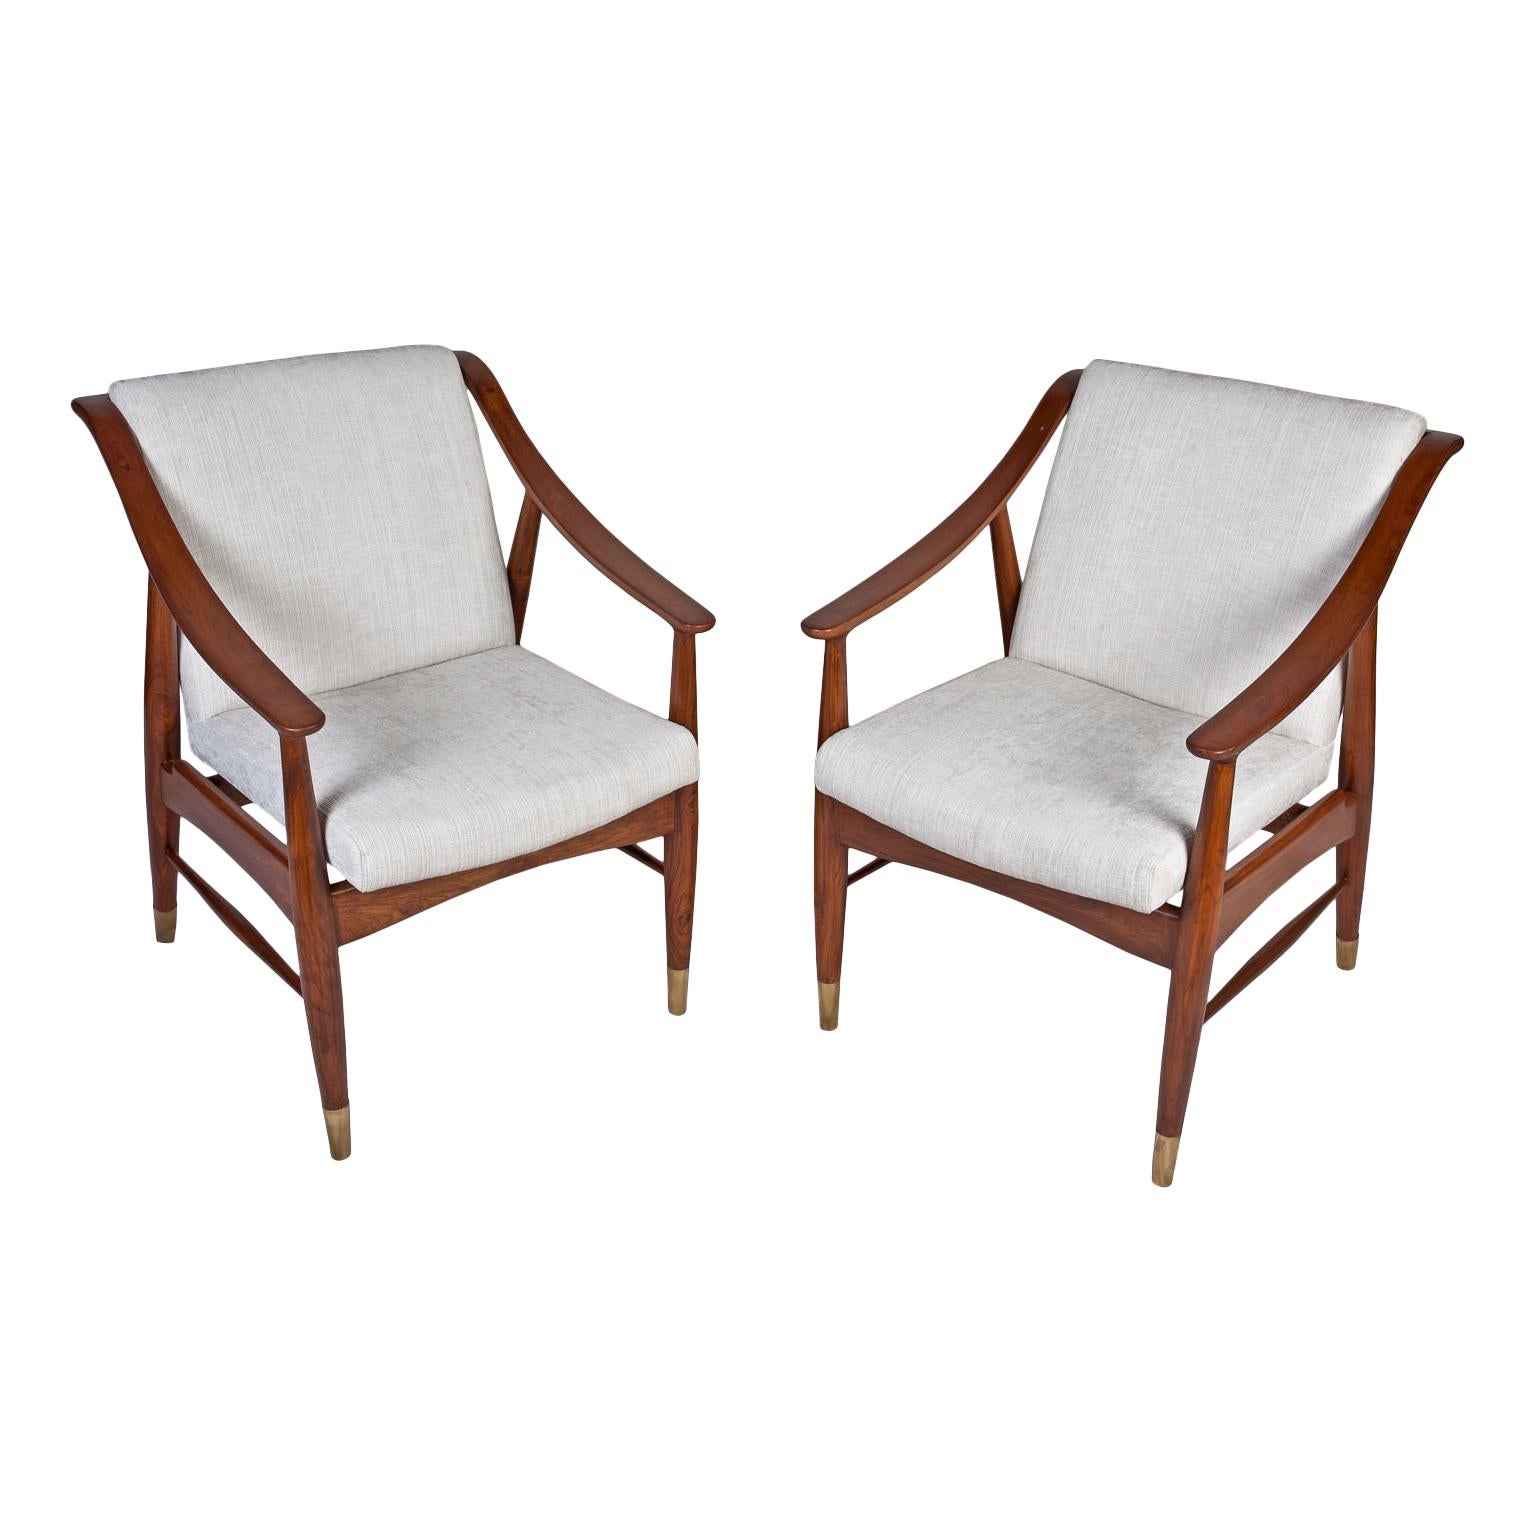 Pair of Mid-Century Modern Danish Teak Chairs